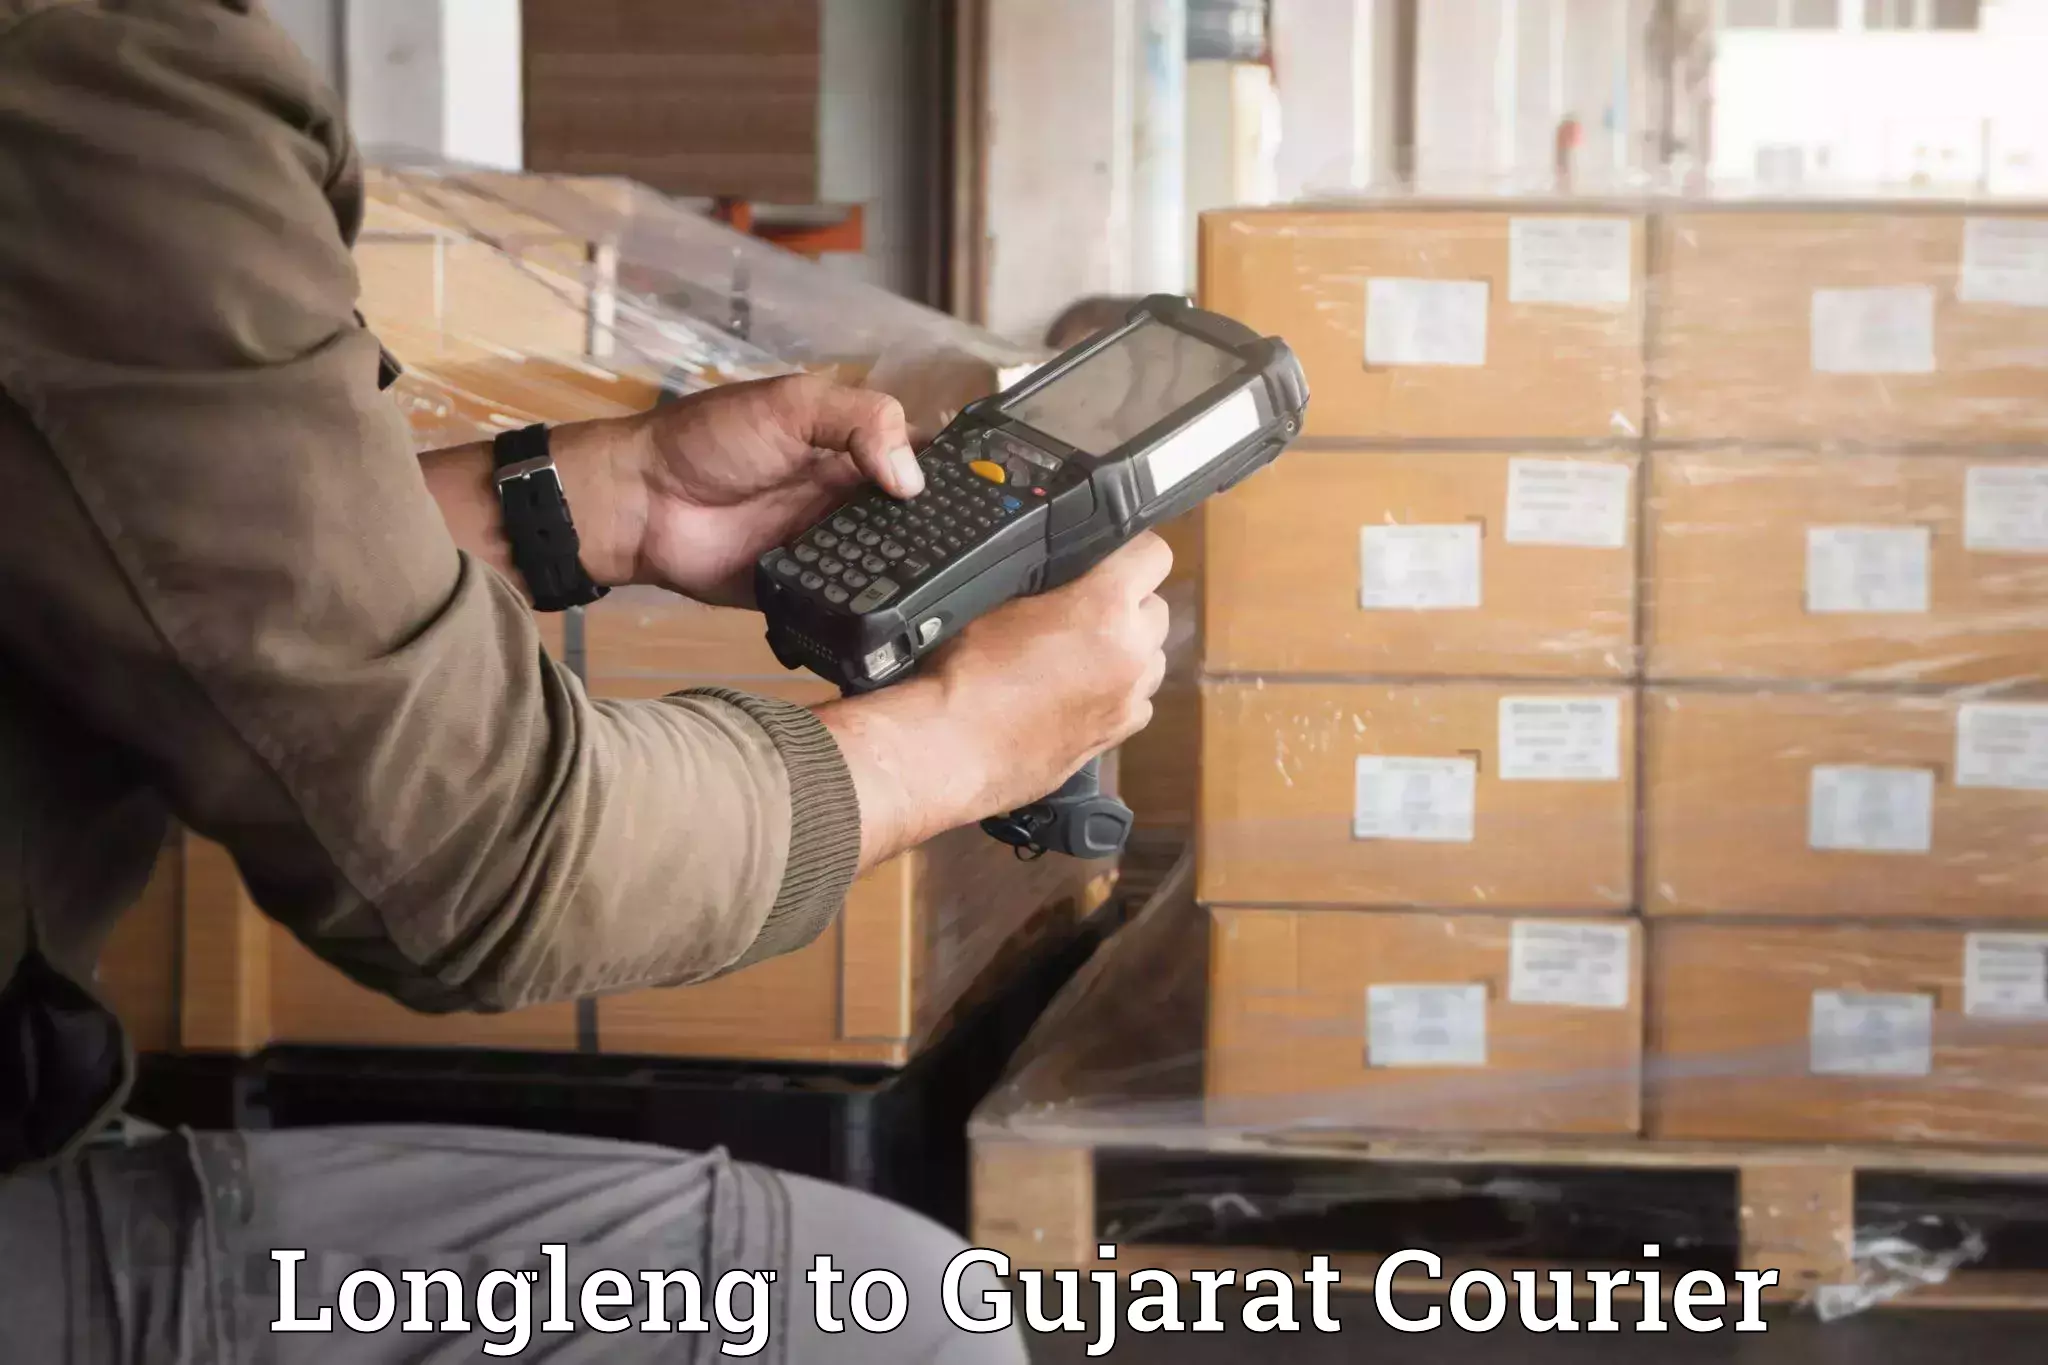 Stress-free moving in Longleng to Gujarat